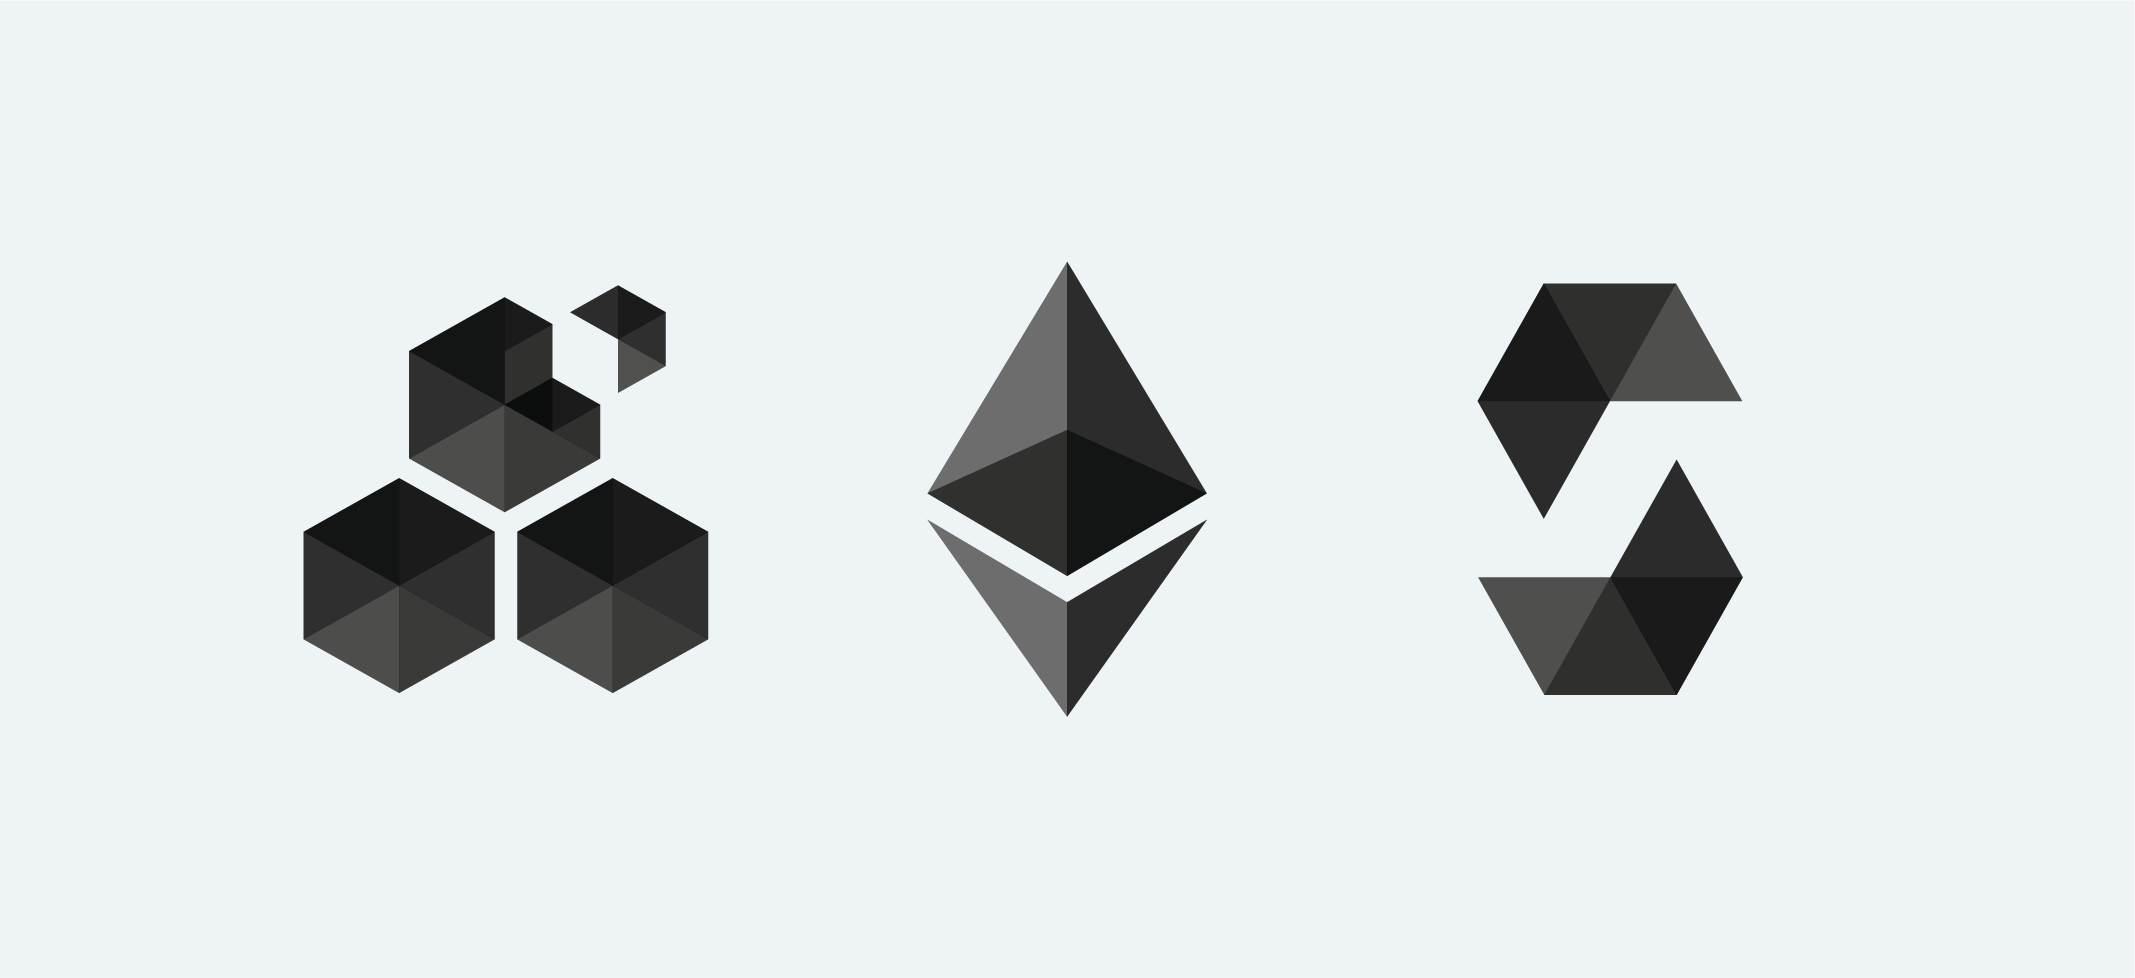 Логотипы технологий, используемых в разработке под EVM